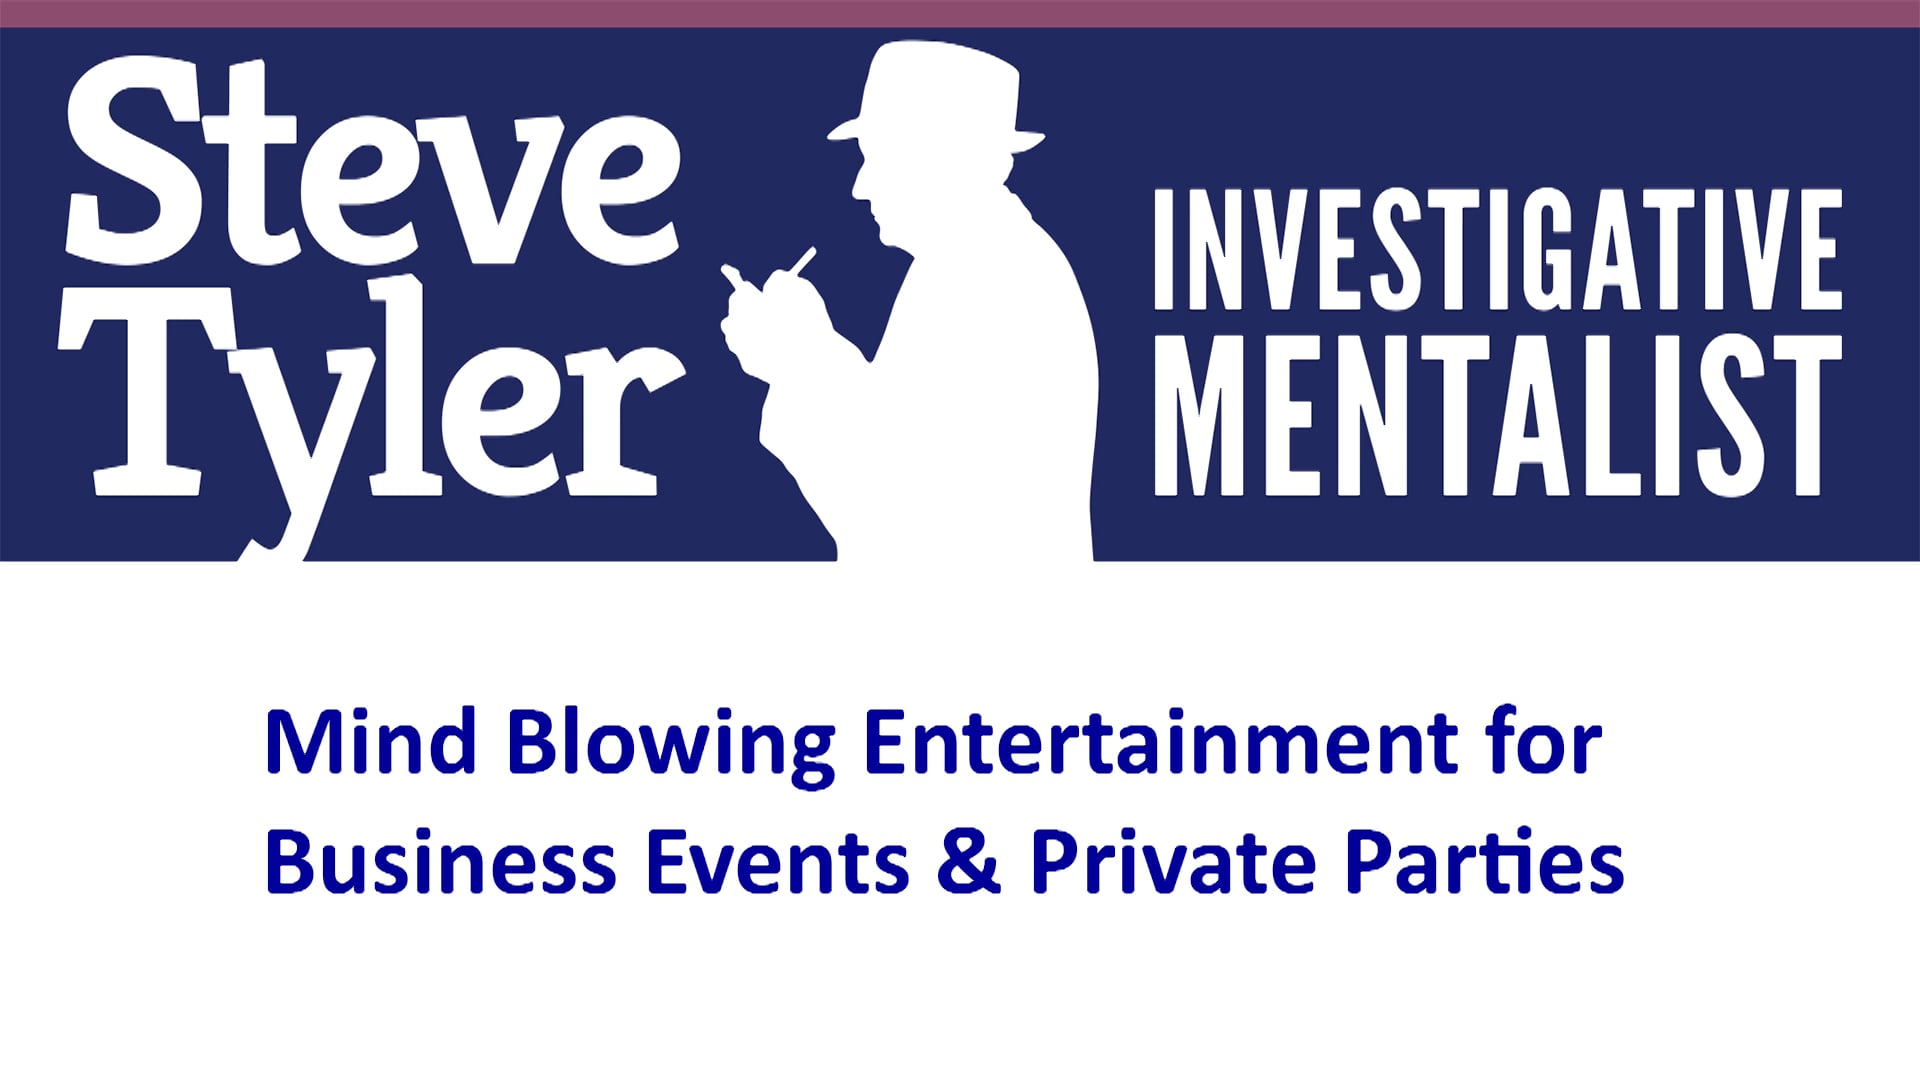 Promotional video thumbnail 1 for Steve Tyler "Investigative Mentalist"